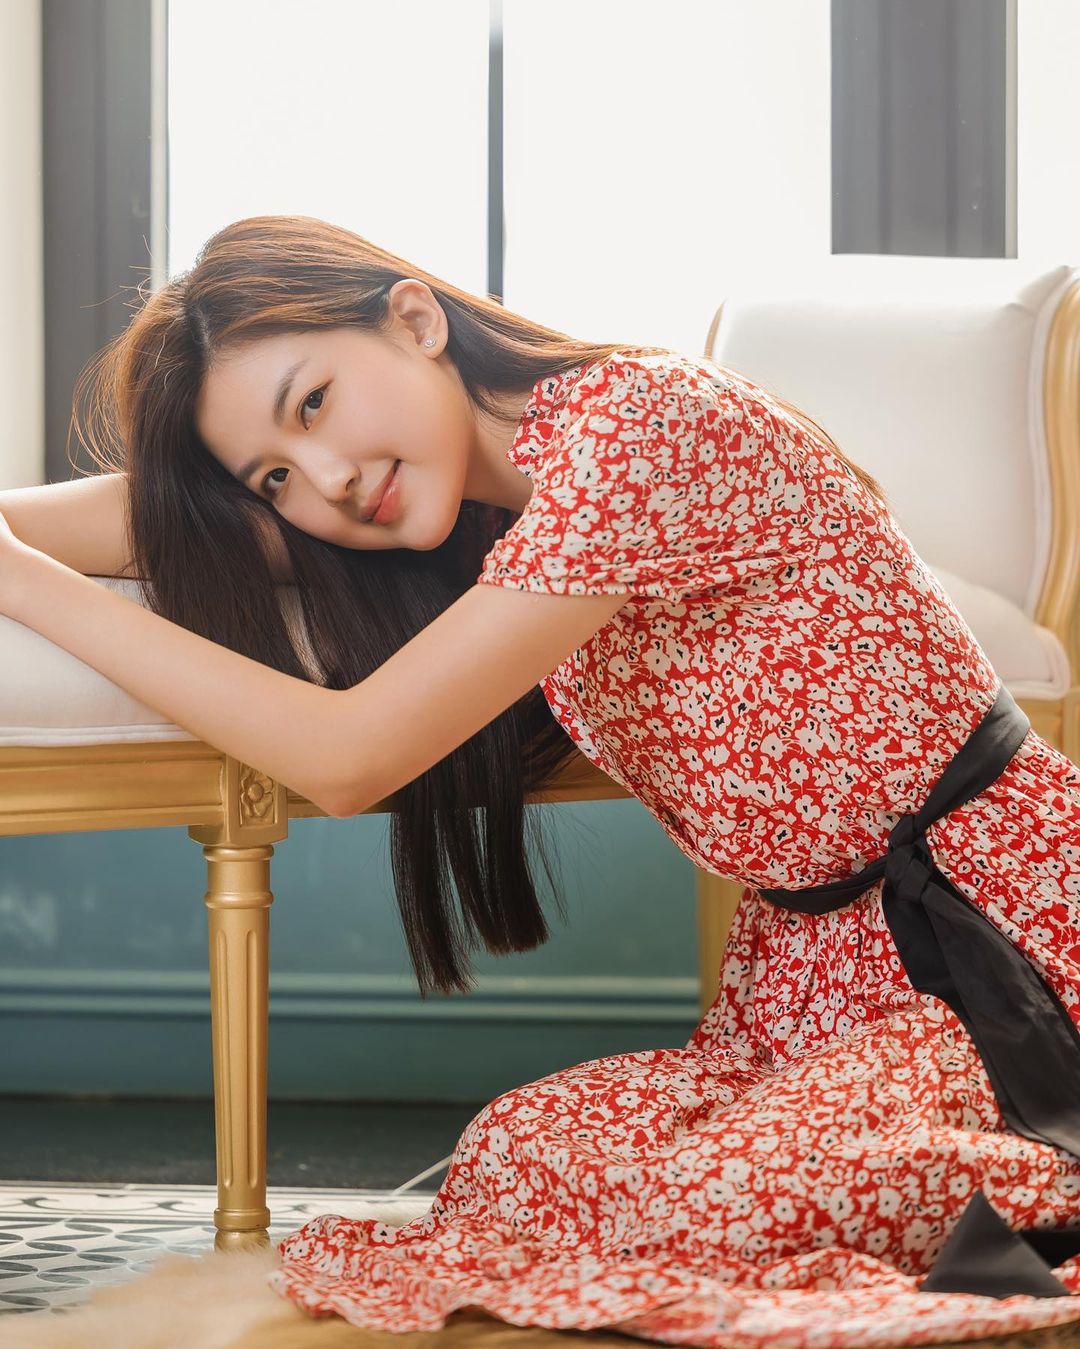 Nữ diễn viên quê Thanh Hóa mặt xinh, dáng đẹp cao hơn 1m70 chẳng thua kém hoa hậu - 2